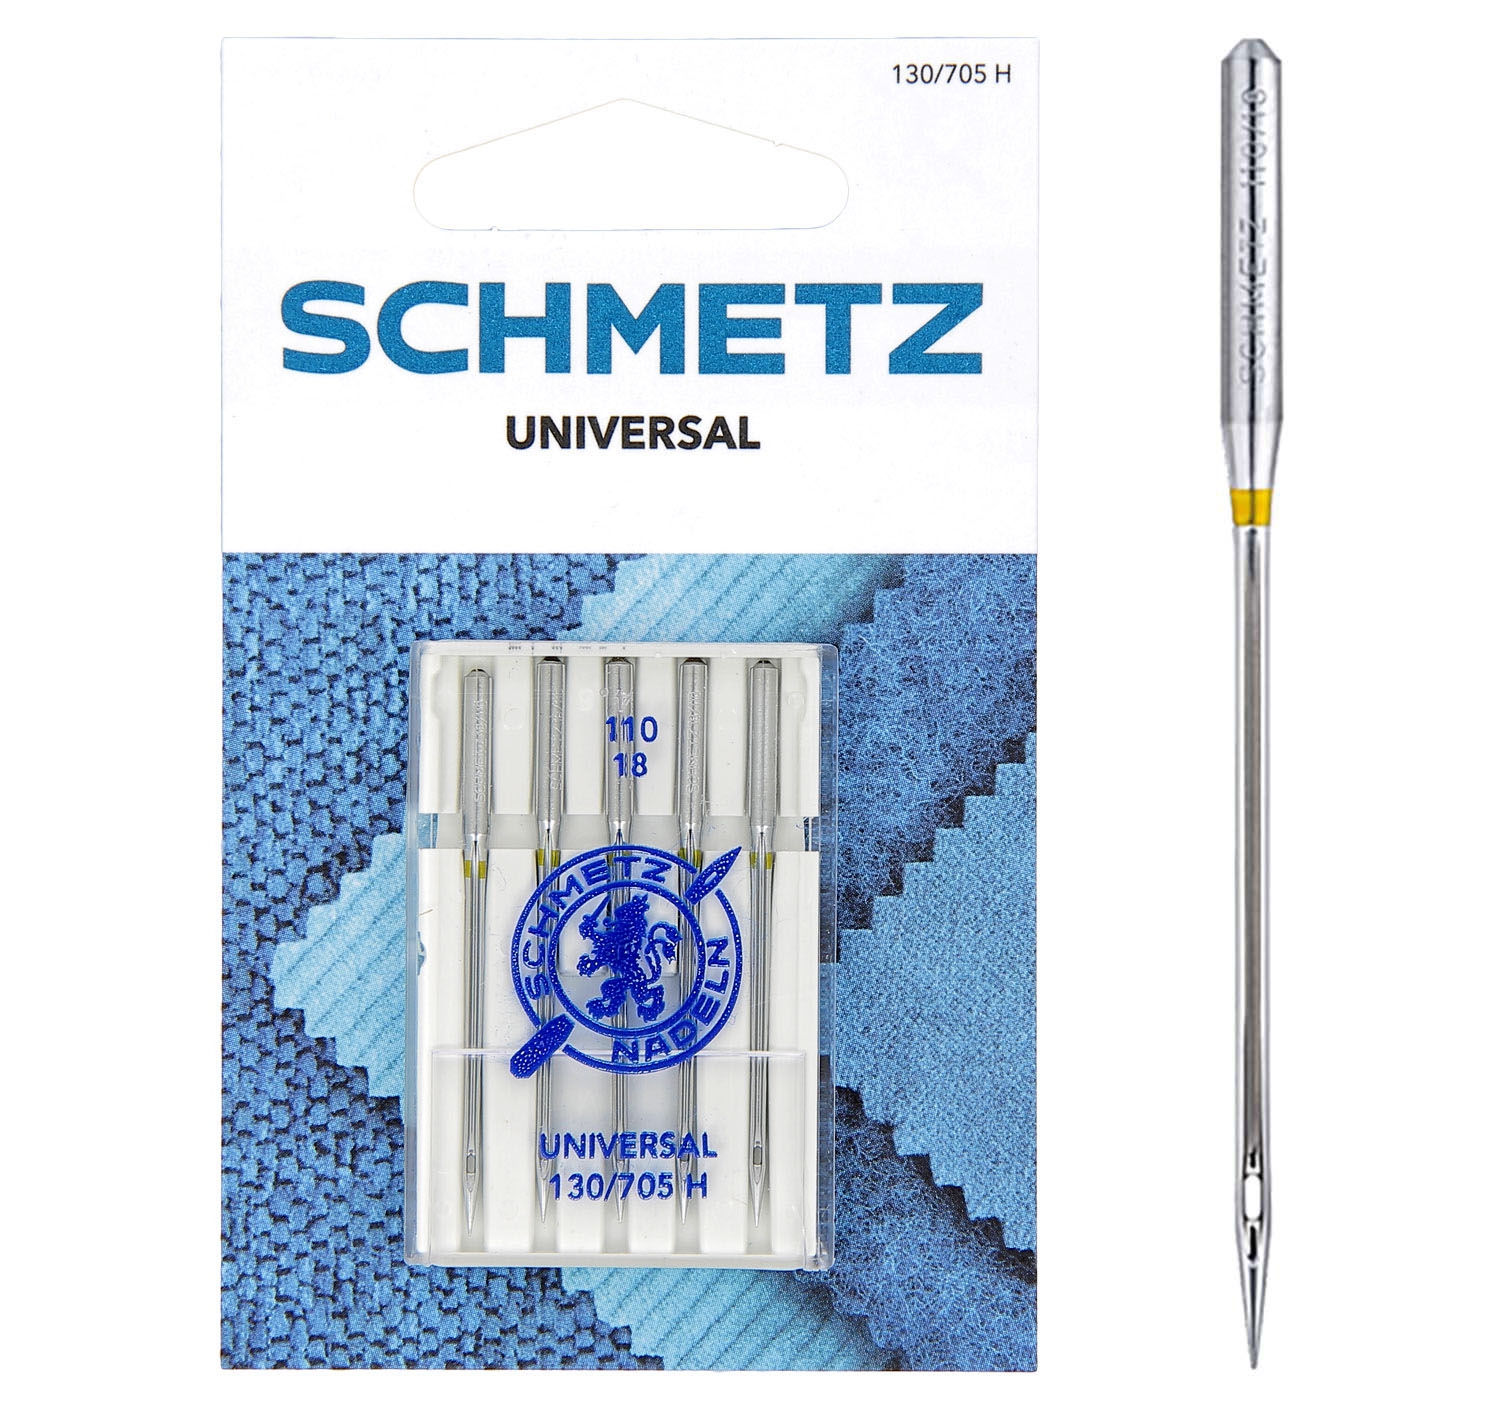 SCHMETZ Nähmaschinennadeln 5 Universal-Nadeln 110/18, 130/705 H